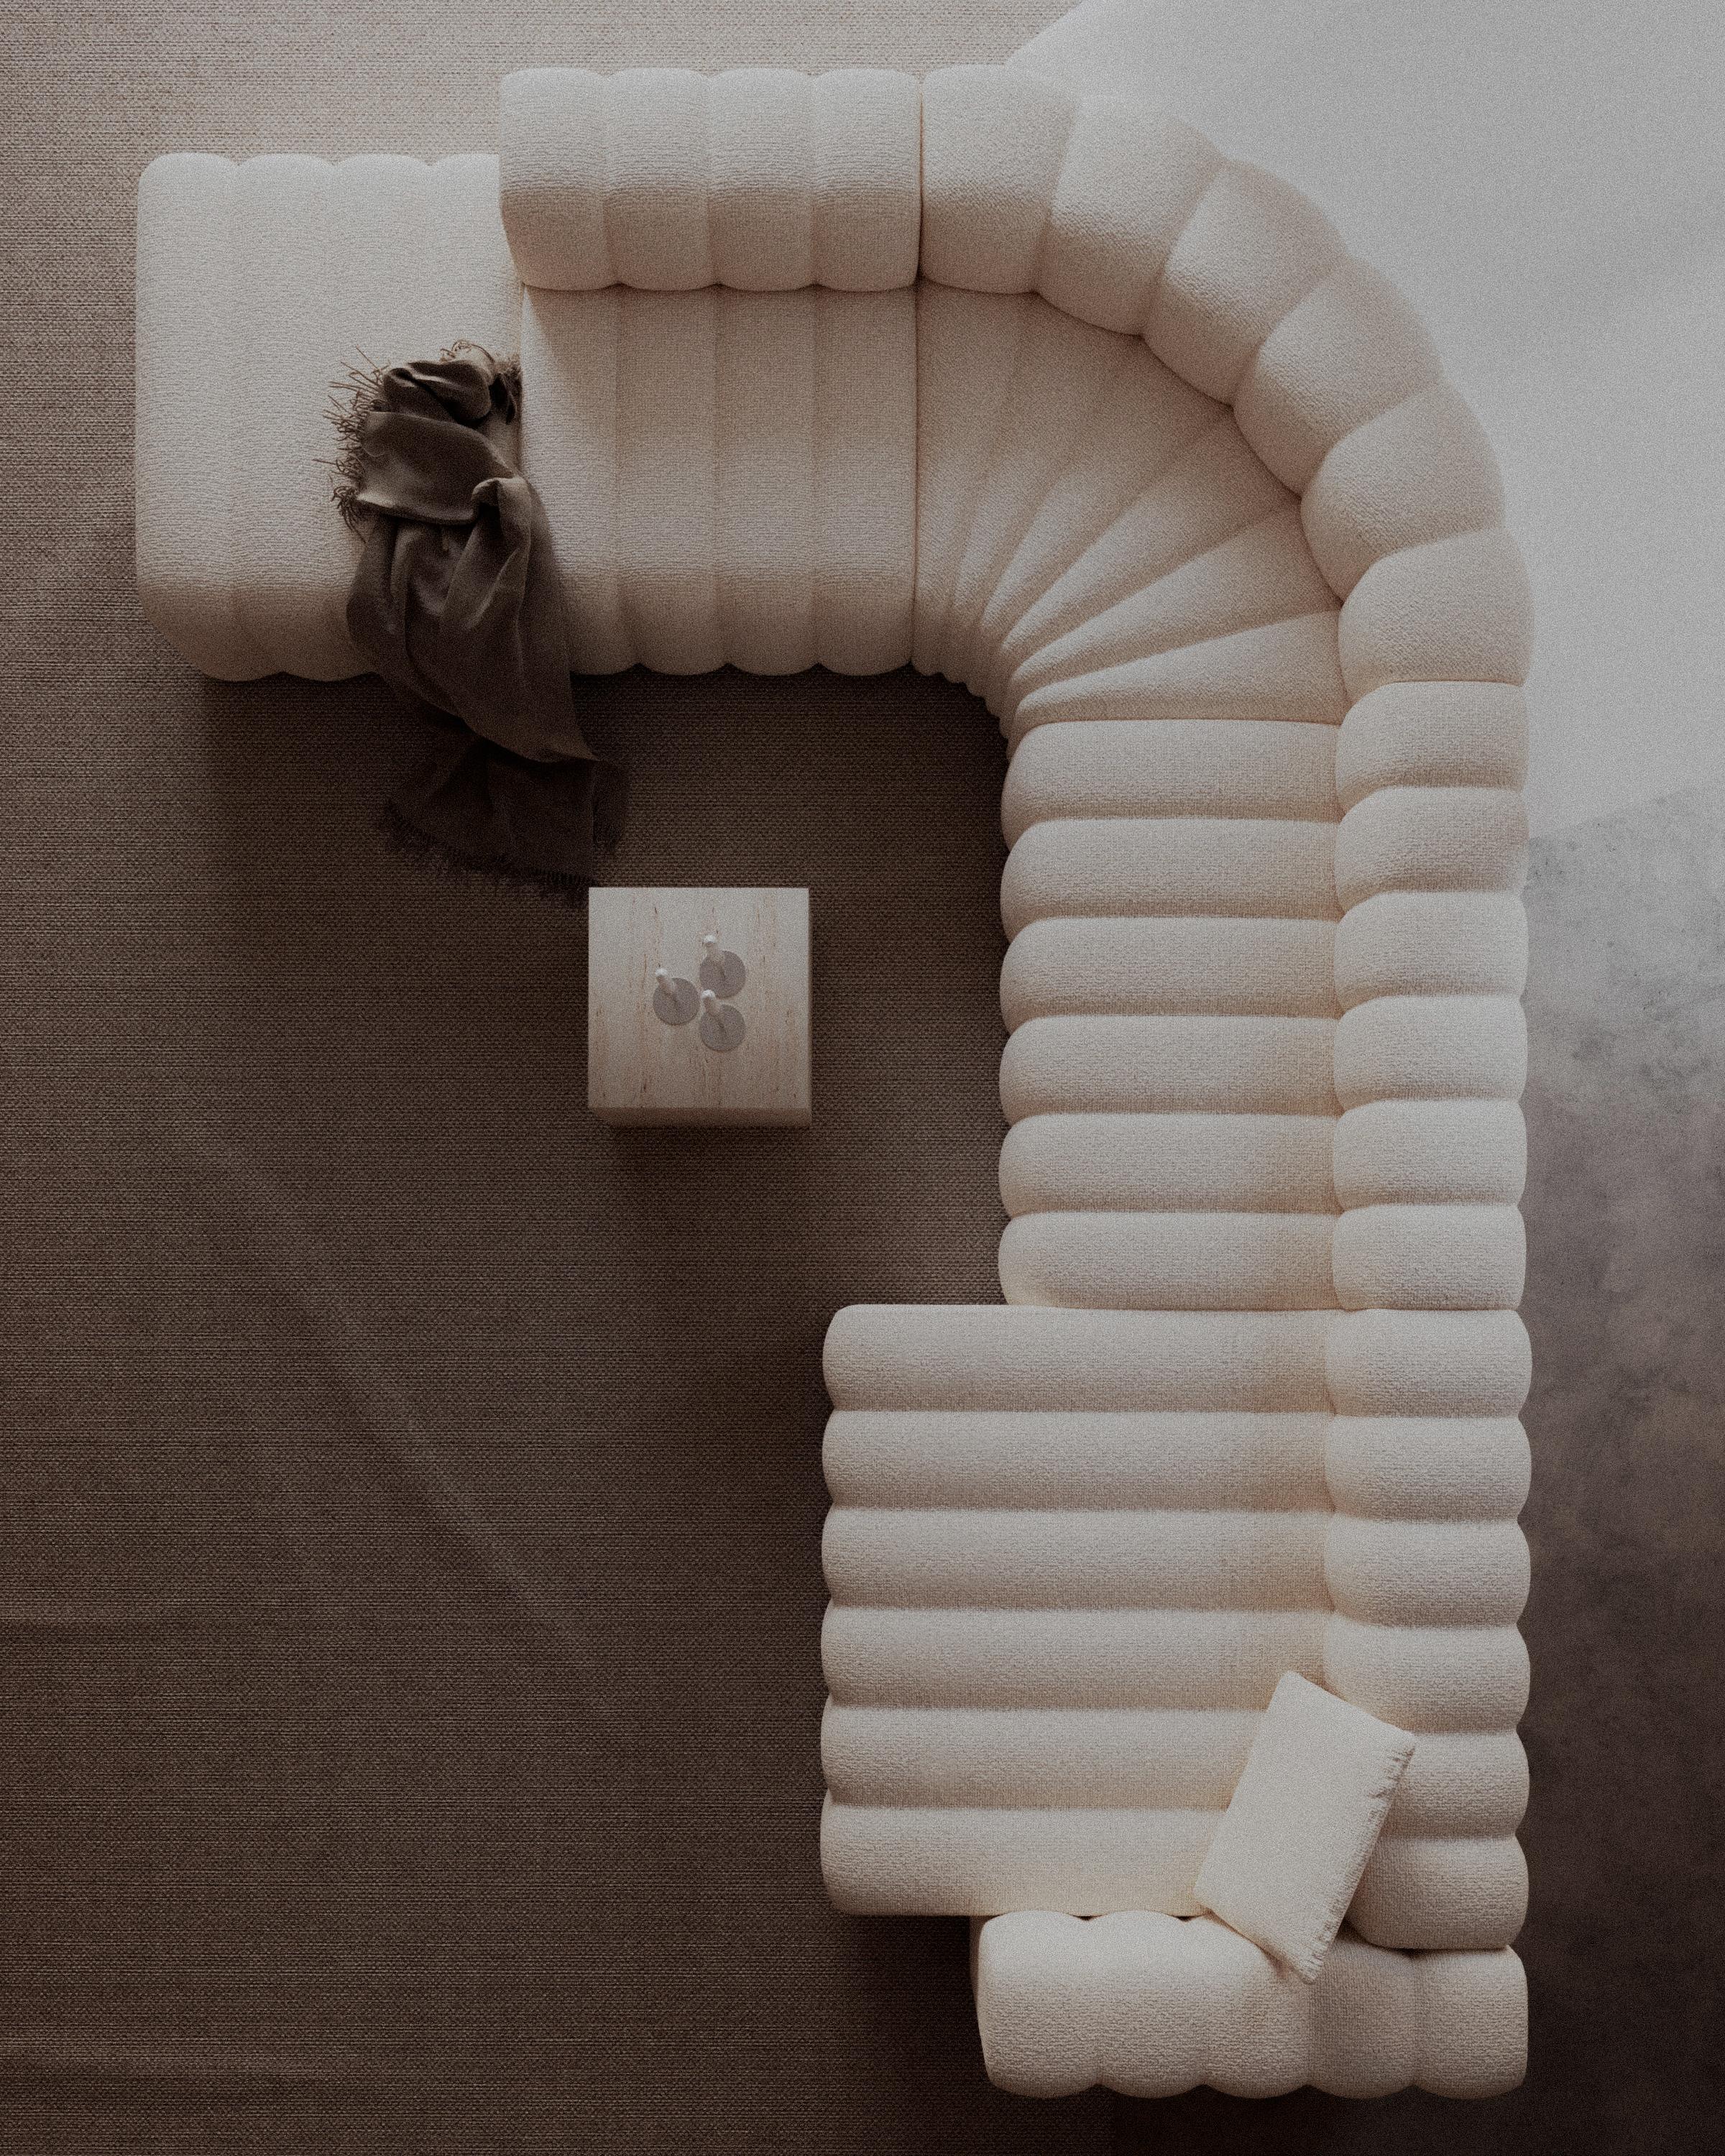 Canapé de studio par Kristian Hansen & Tommy Hyldahl pour Nor11

Module large avec accoudoir court à droite
Dimensions : L. 153 cm / P. 130 cm / H. 70cm / Siège H 47cm 

Barnum 7 (tapisserie d'ameublement dans l'image)

Canapé modulable : assemblez